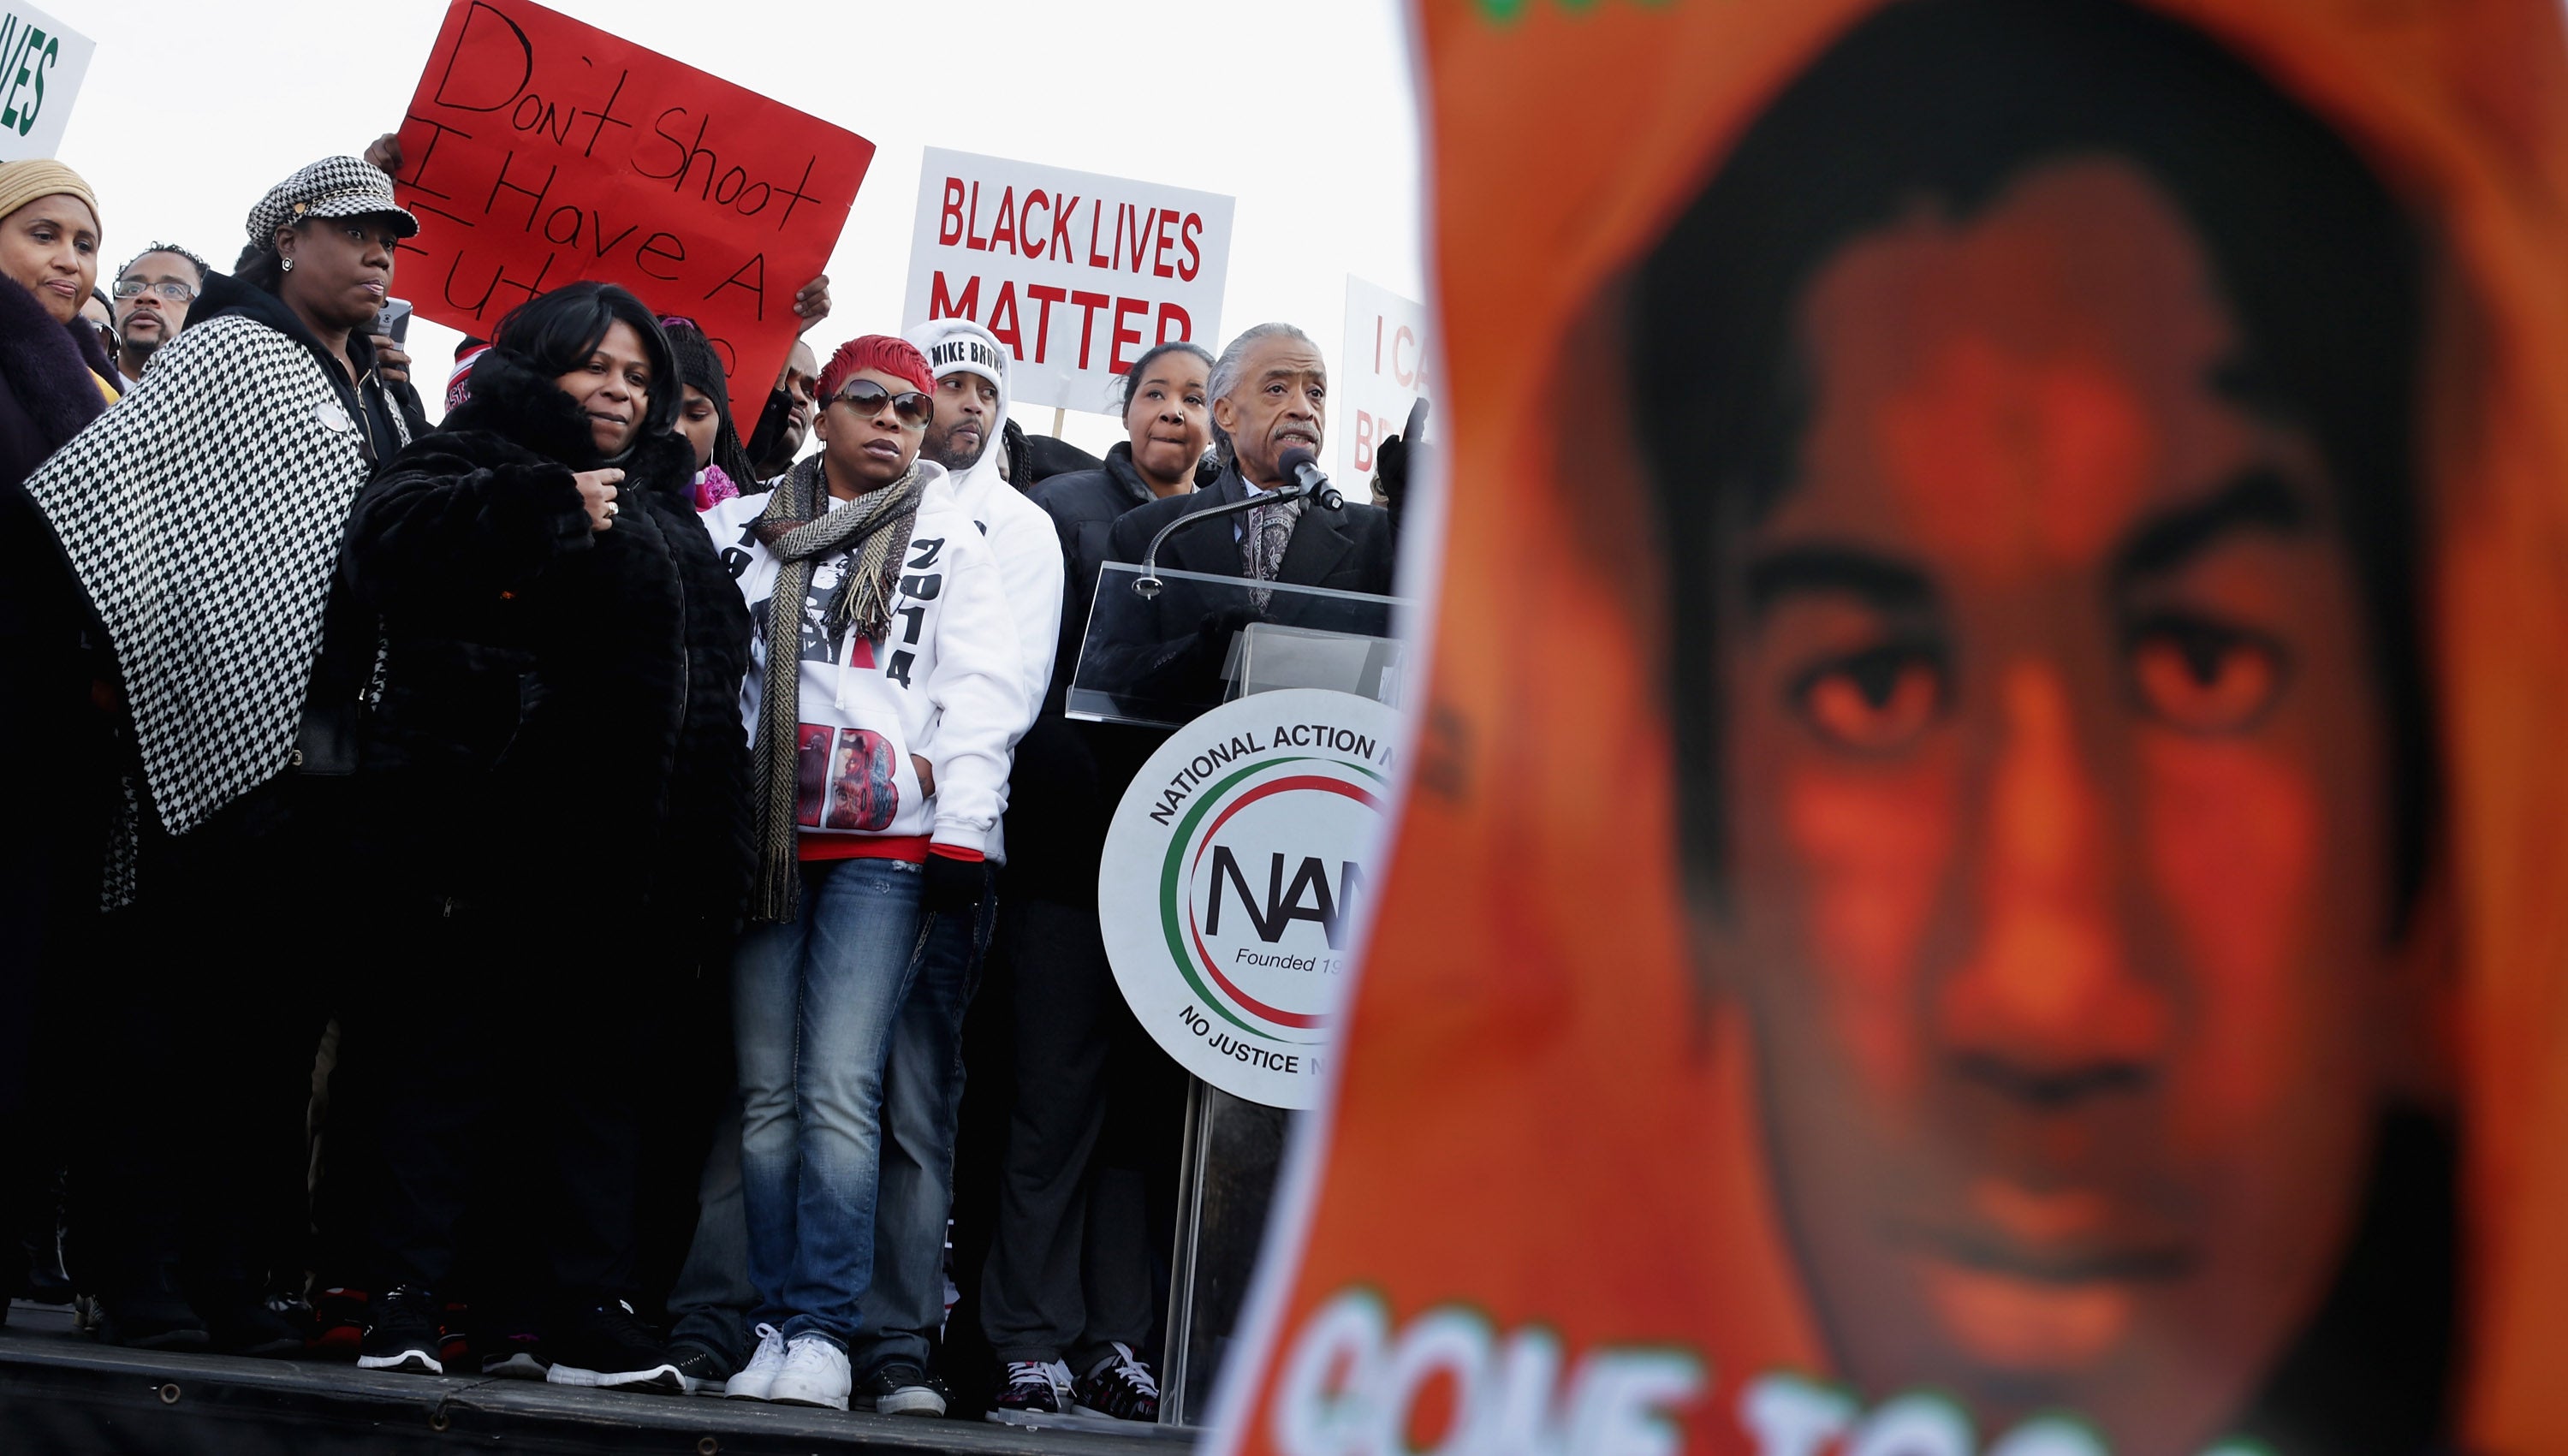 Los padres de los asesinados por armas de fuego, incluida la madre de Trayvon, Sybrina Fulton (con sombrero a cuadros), ayudaron a impulsar la causa de Black Lives Matter